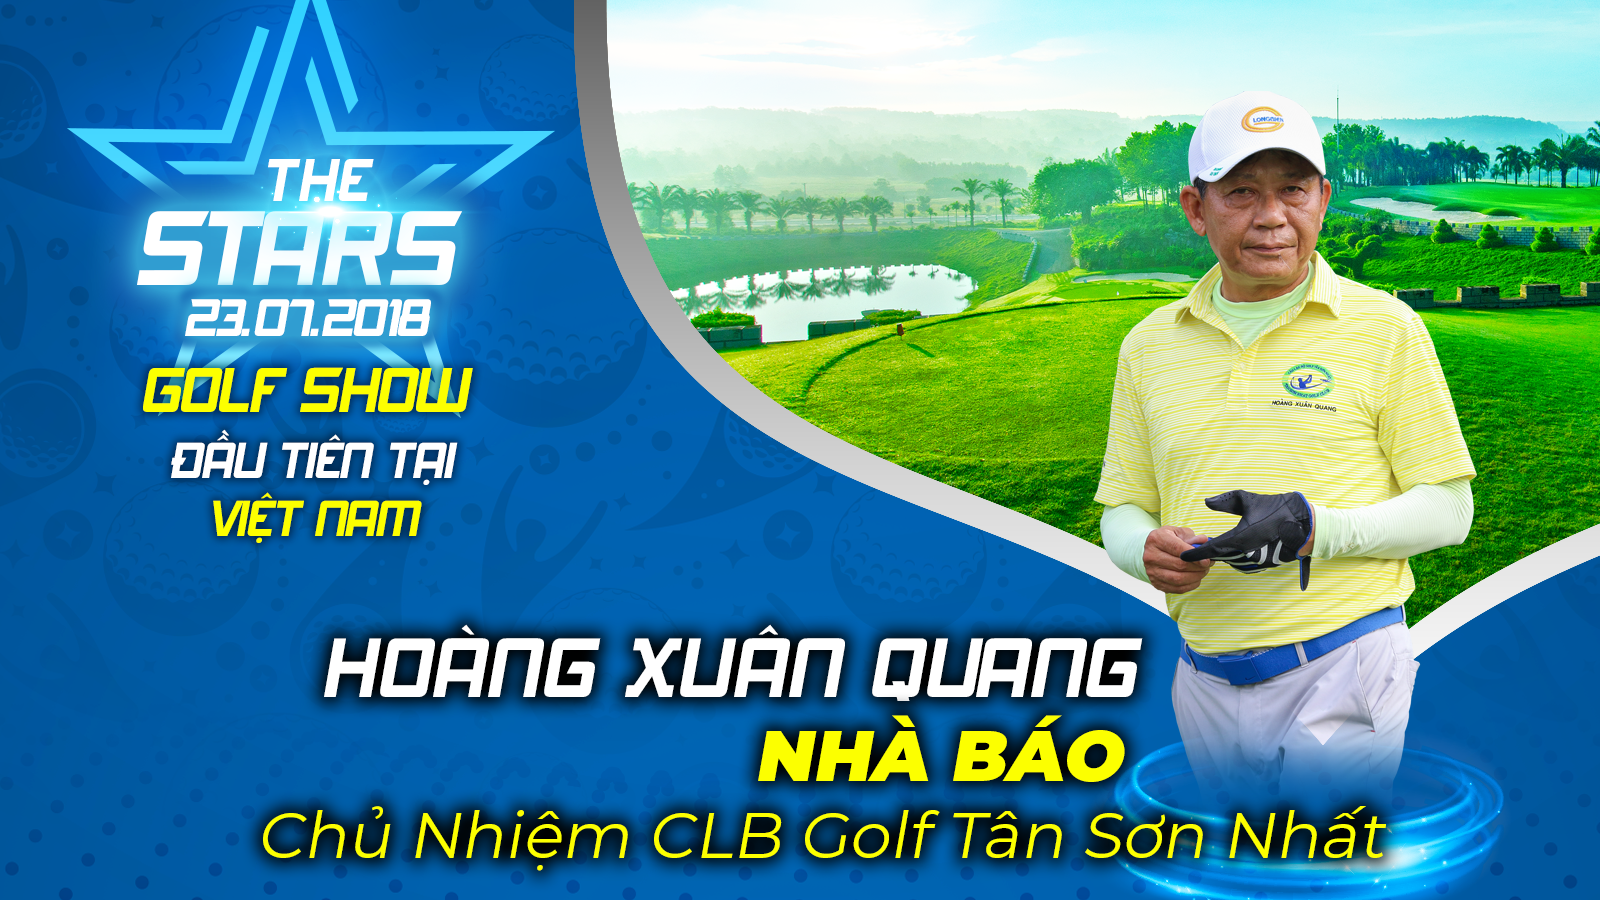 Chủ nhiệm CLB Golf Tân Sơn Nhất Hoàng Xuân Quang: ‘Hoạt động vì cộng đồng’